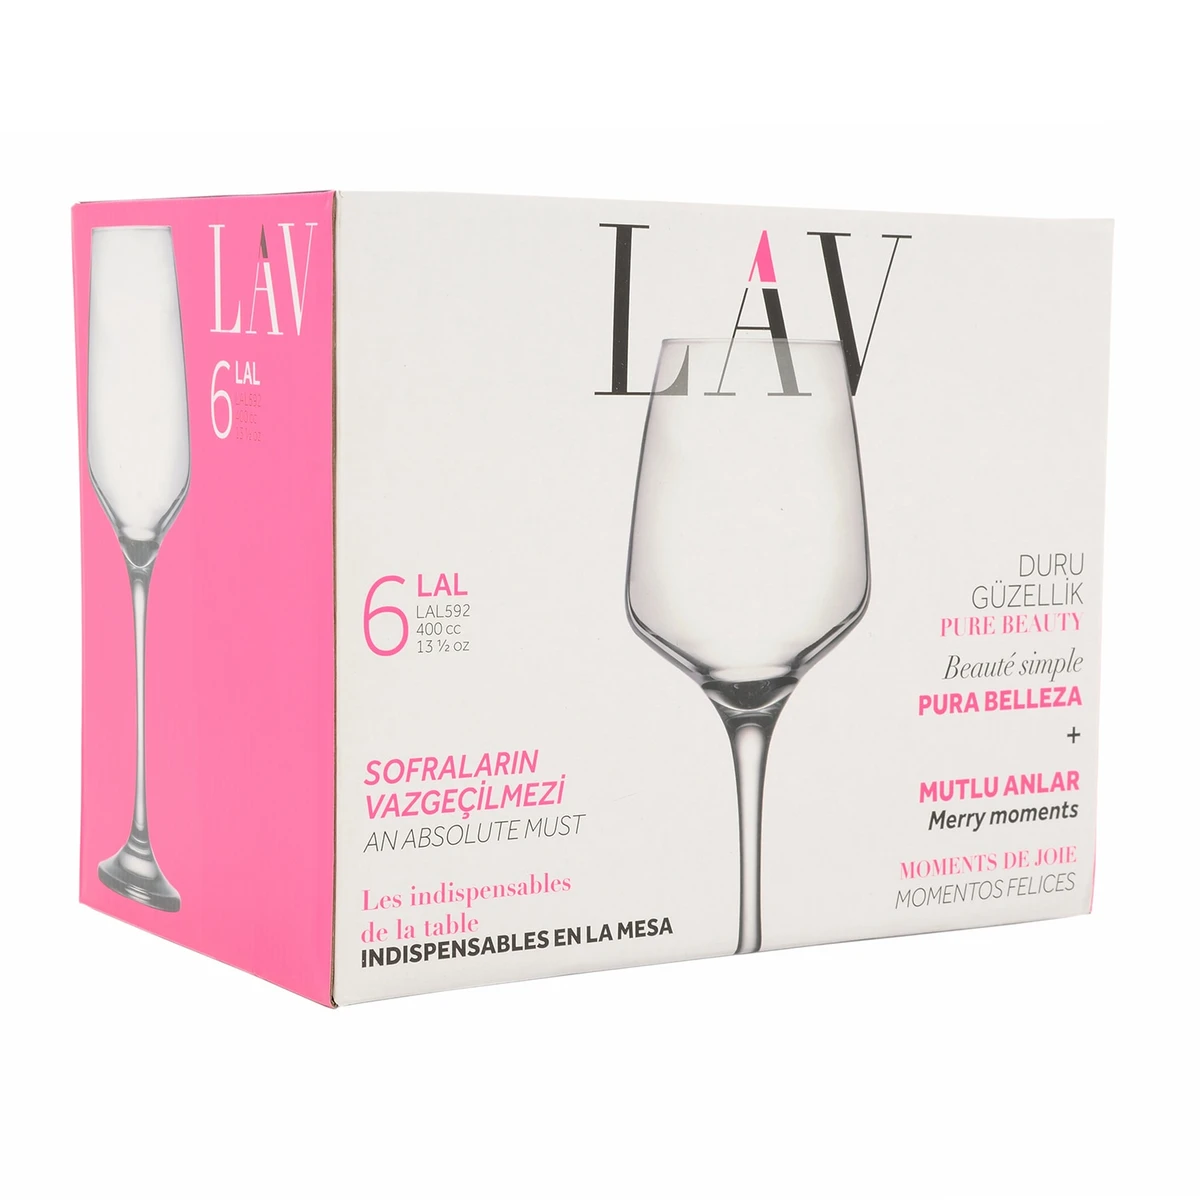 LAV Lal 6 darabos koktélos pohár készlet, 400 ml